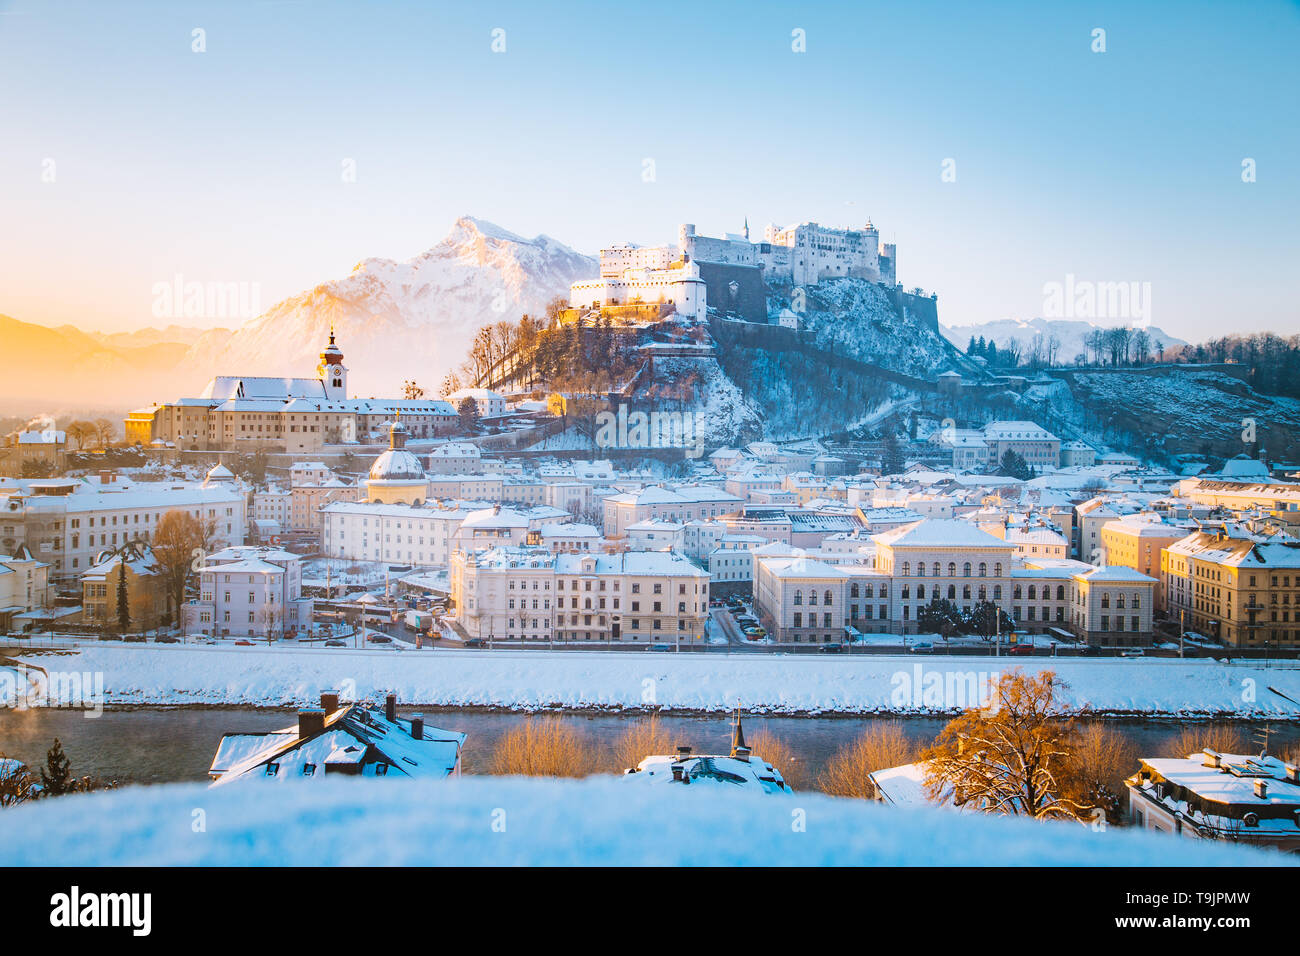 L'affichage classique de la vieille ville de Salzbourg avec célèbre forteresse de Hohensalzburg et la rivière Salzach, dans la pittoresque ville de lumière du matin au lever du soleil sur une belle c Banque D'Images